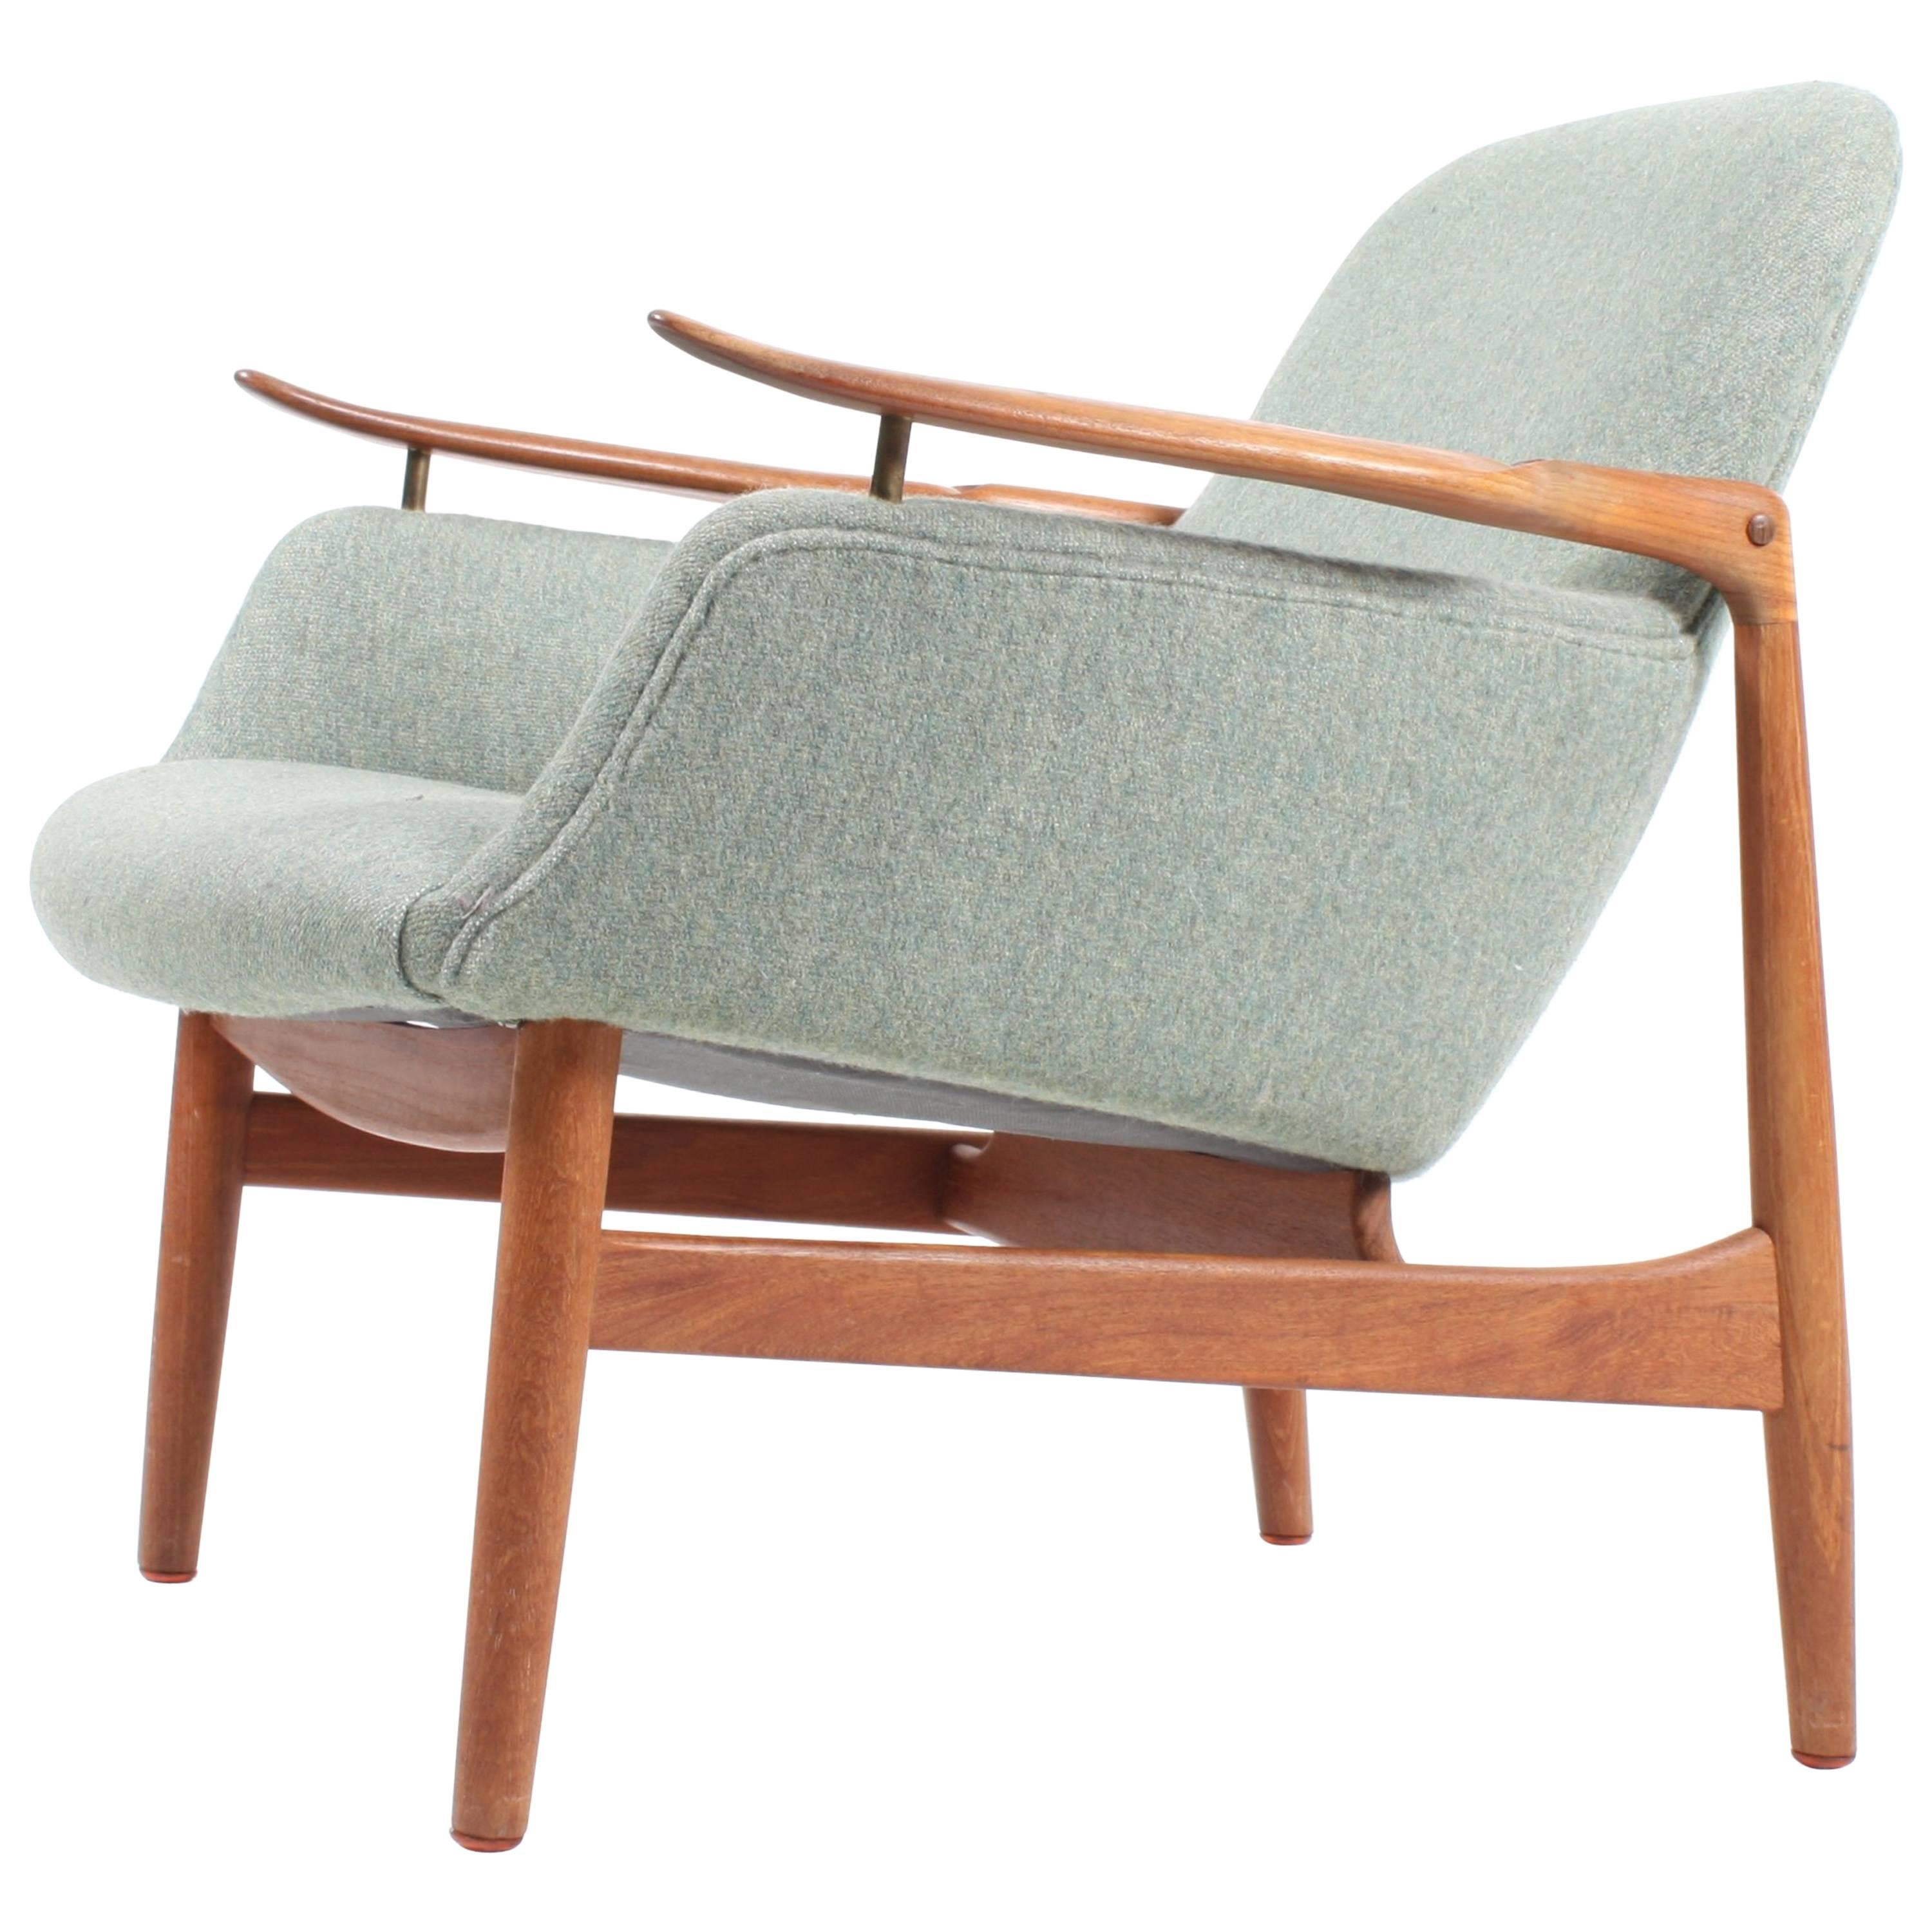 NV53 Lounge Chair by Finn Juhl